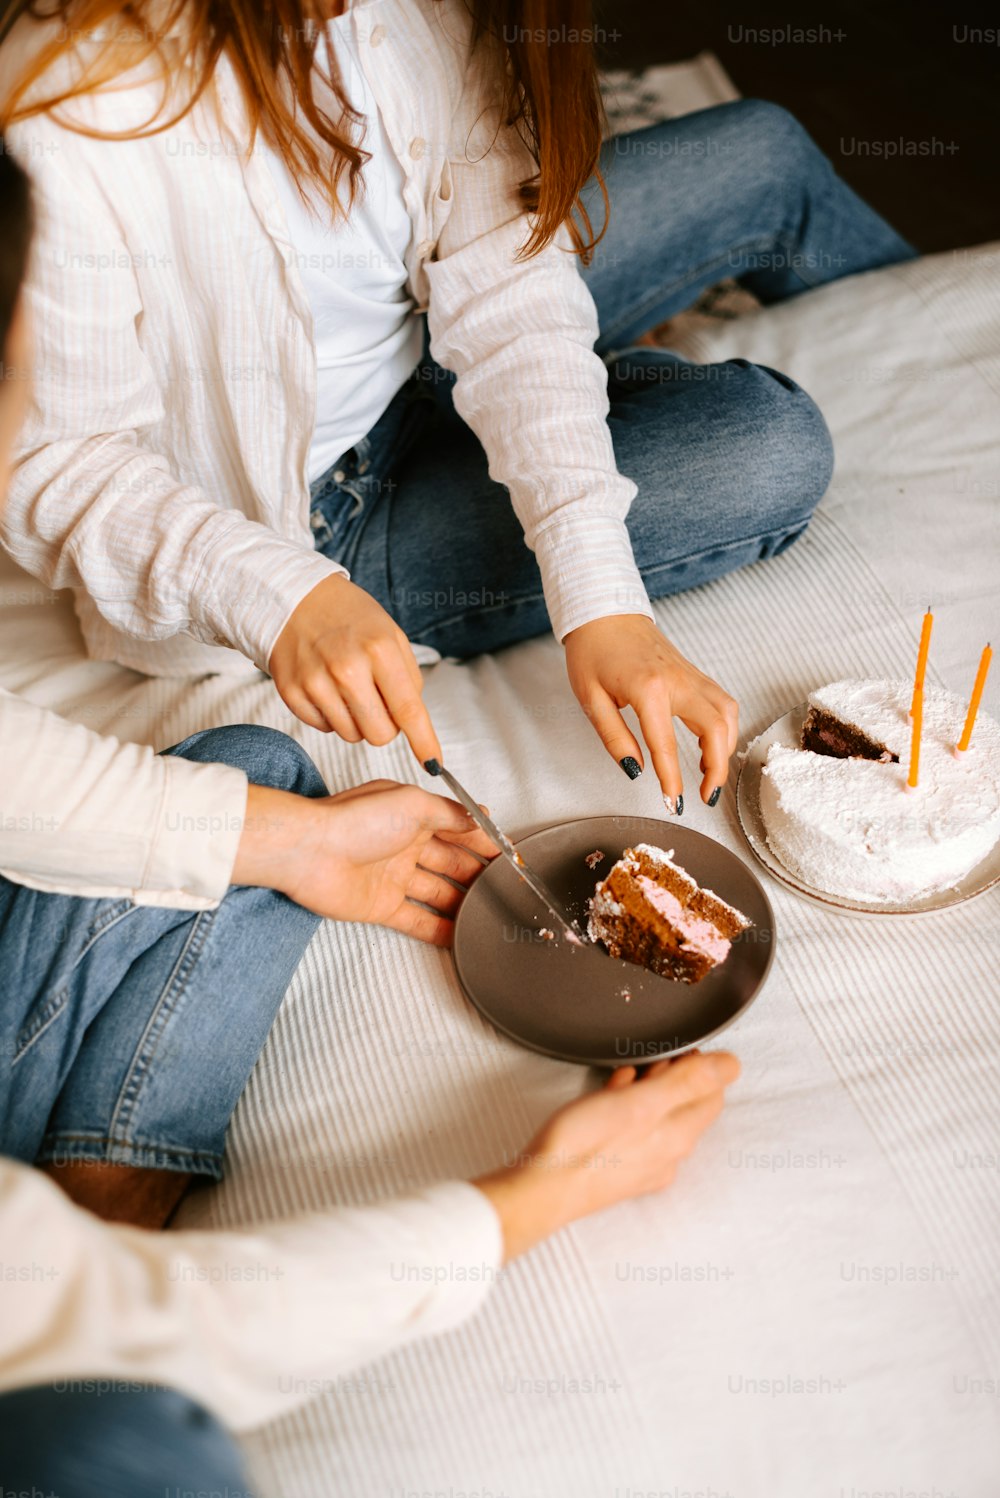 Zwei Frauen sitzen auf einem Bett und schneiden in einen Kuchen